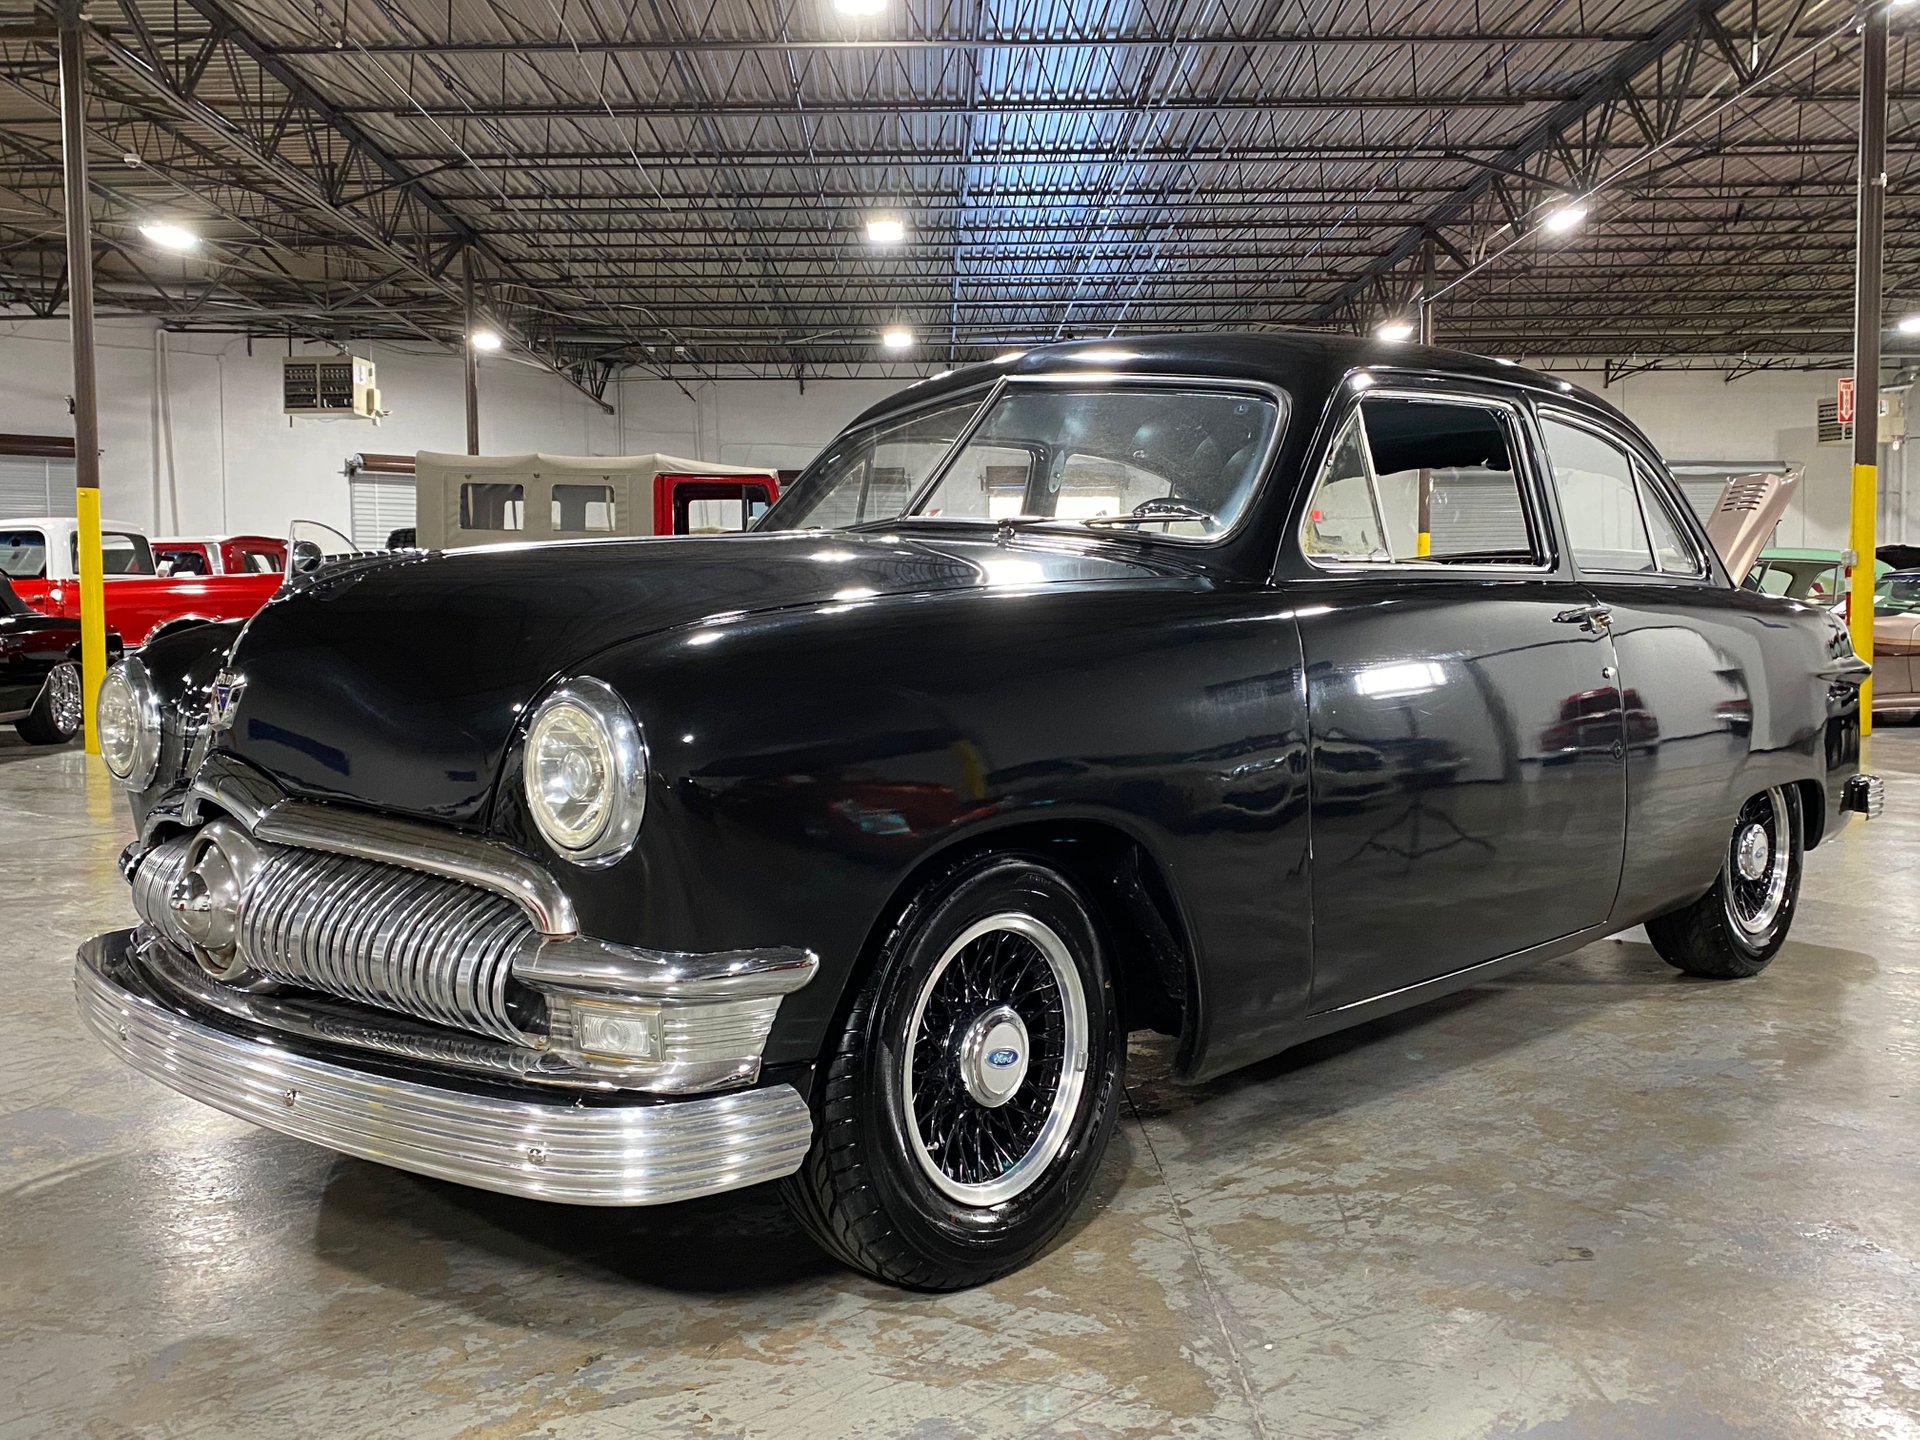 1950 ford custom deluxe